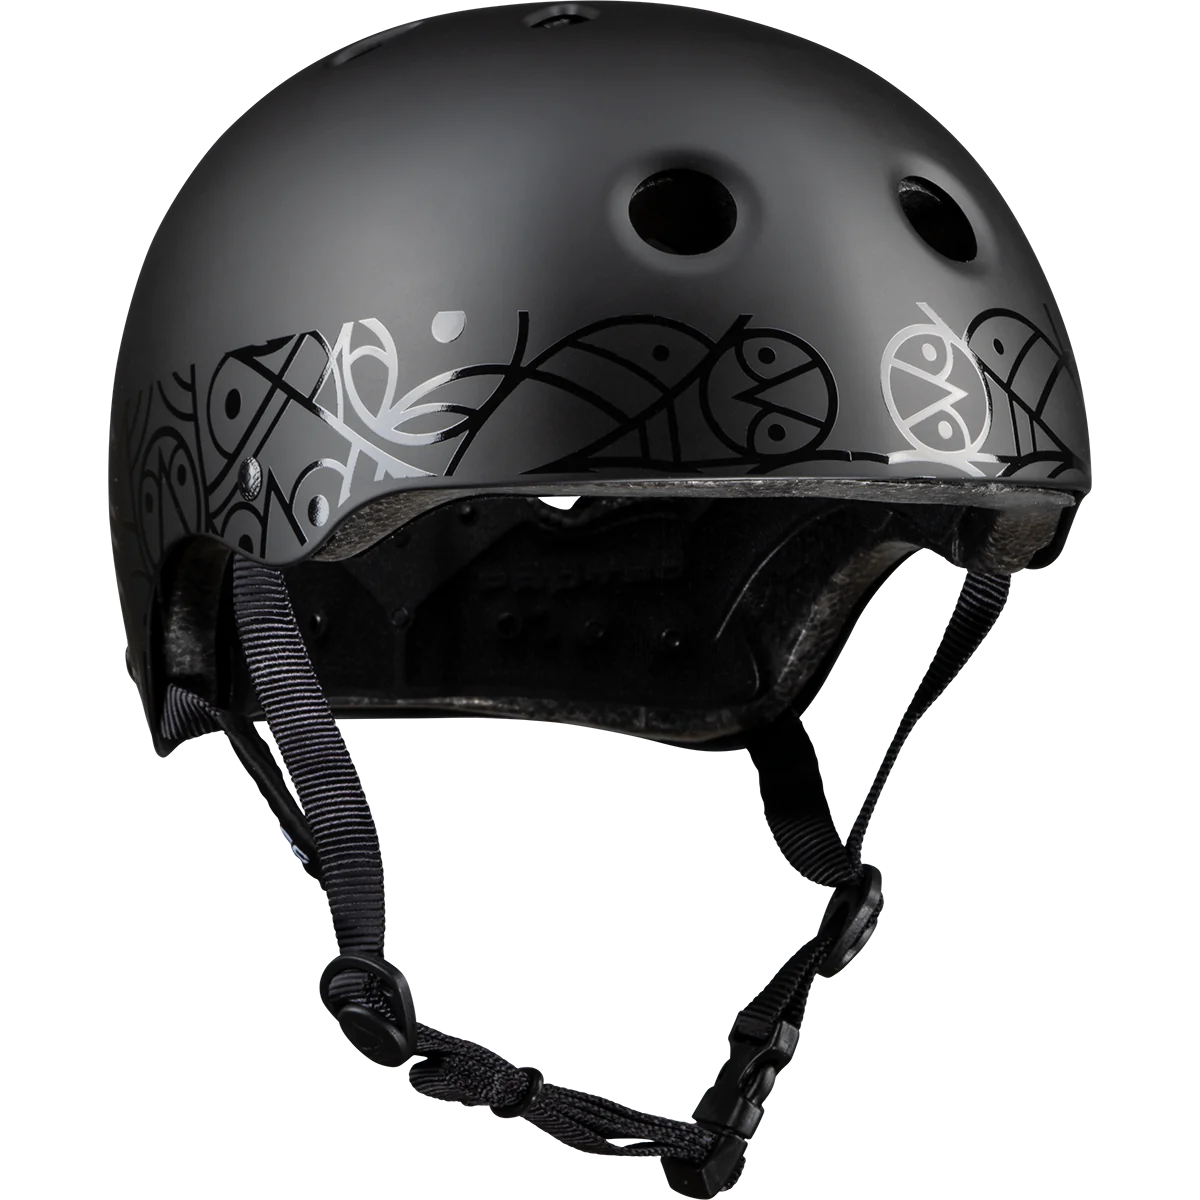 ProTec Classic Certified Pendelton Helmet